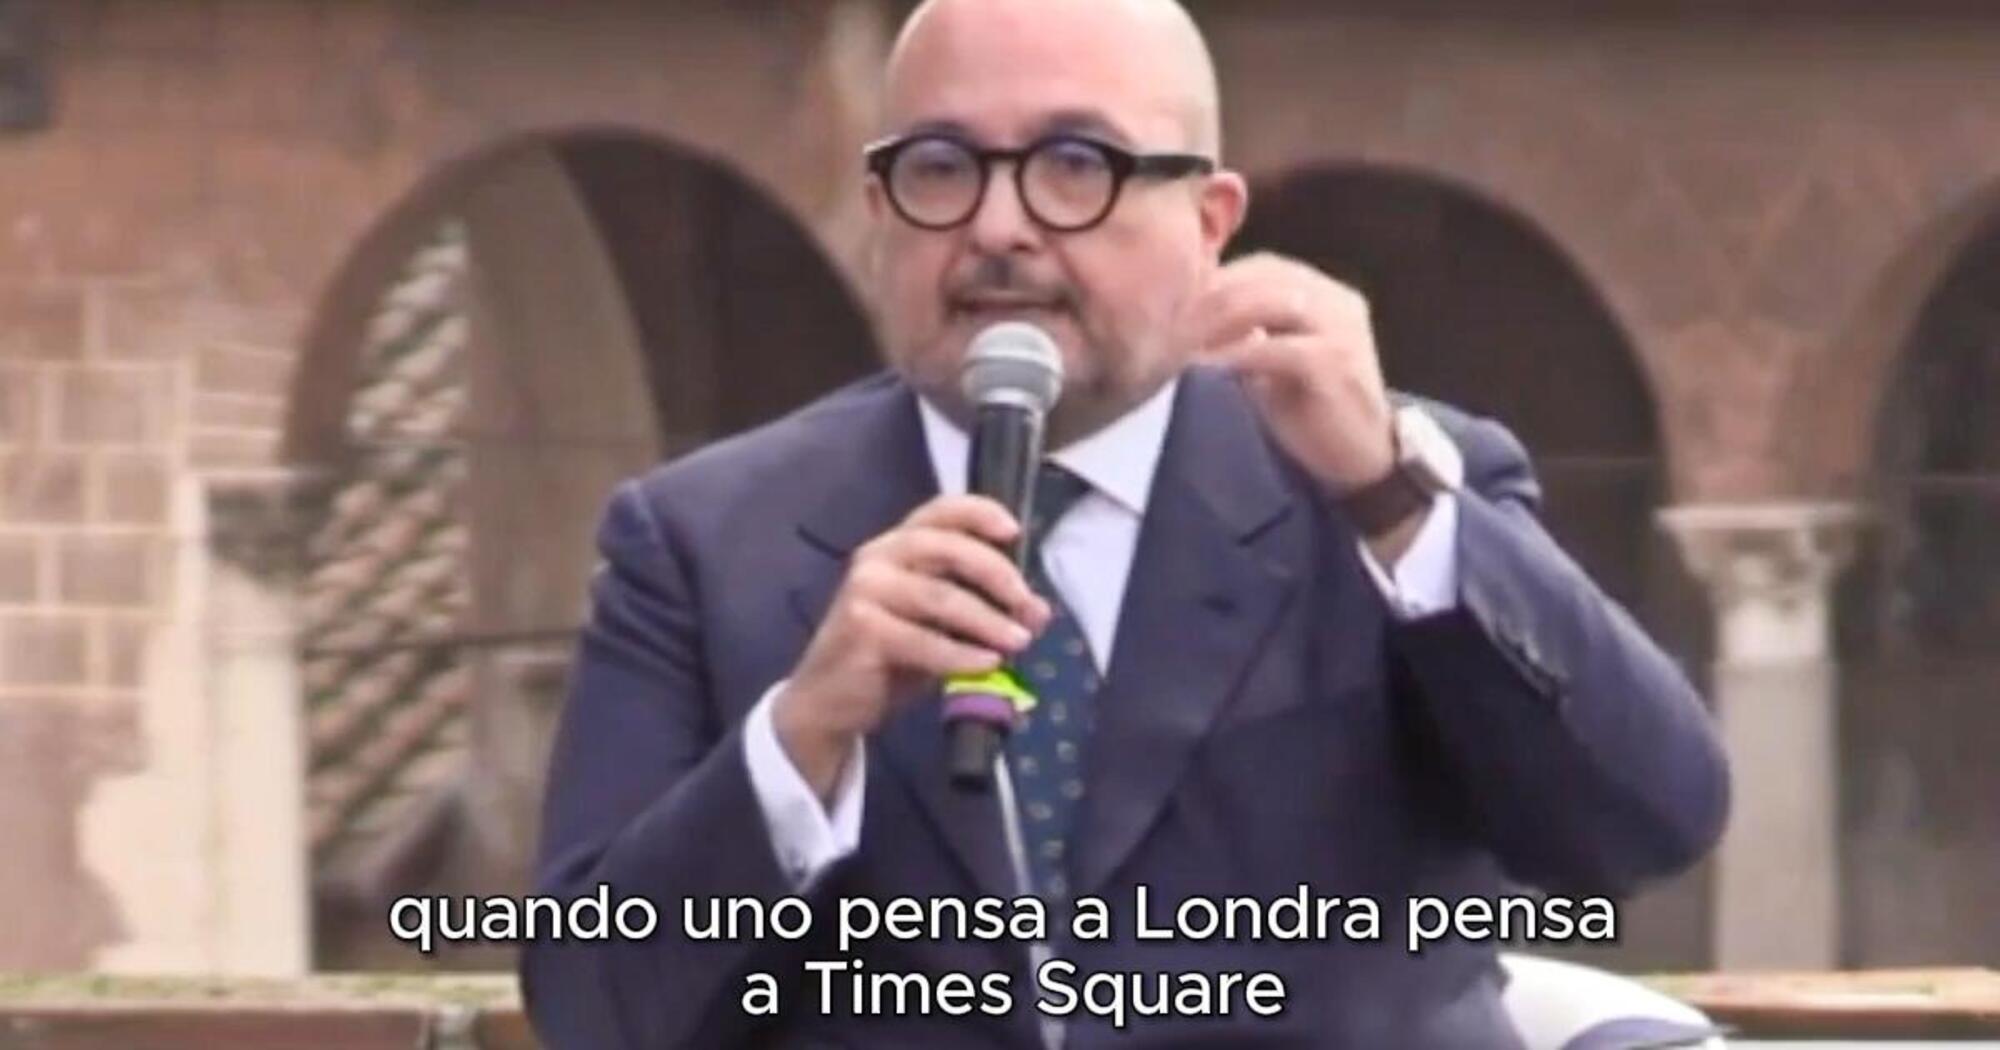 La gaffe del ministro Gennaro Sangiuliano su Times Square a Londra